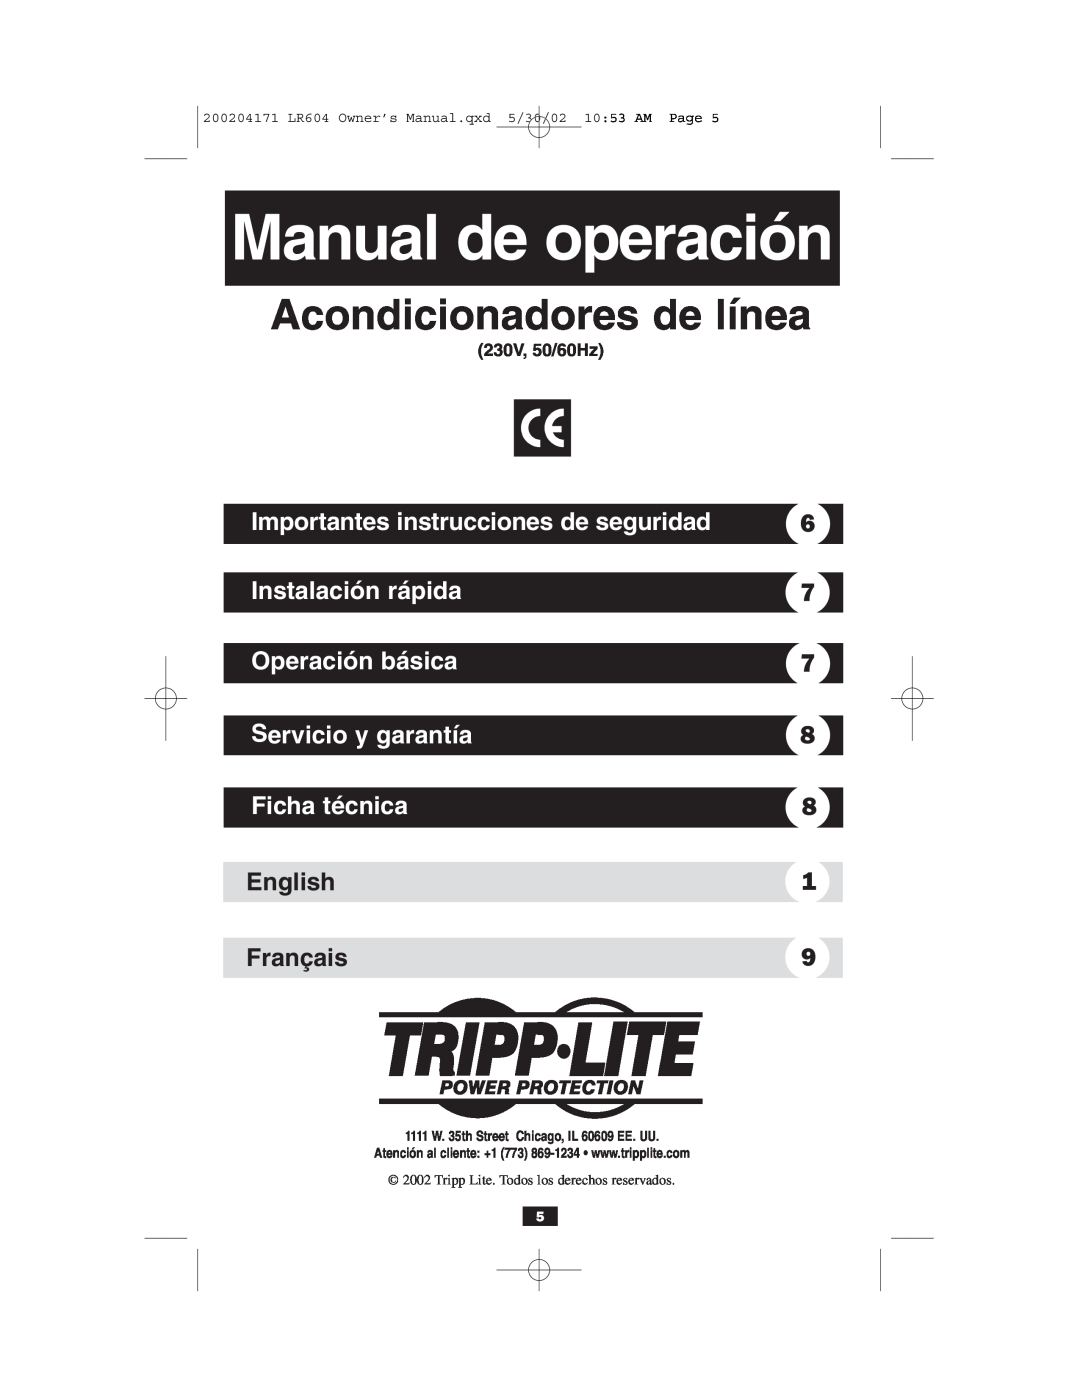 Tripp Lite 230V Manual de operación, Acondicionadores de línea, Importantes instrucciones de seguridad, Instalación rápida 